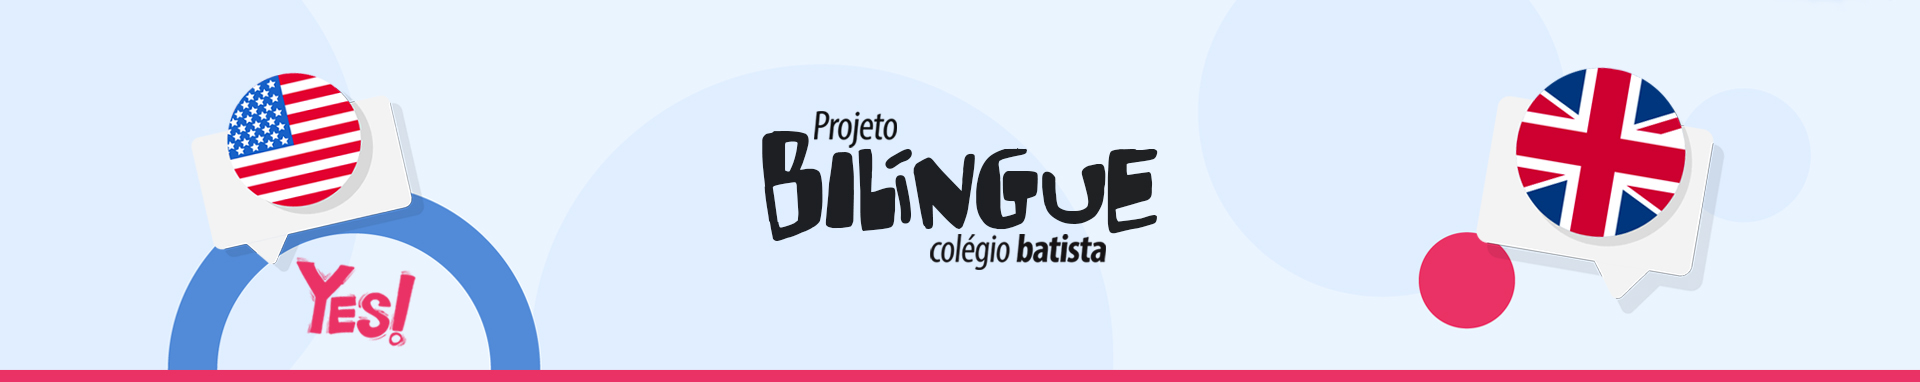 Capa_site_Bilingue